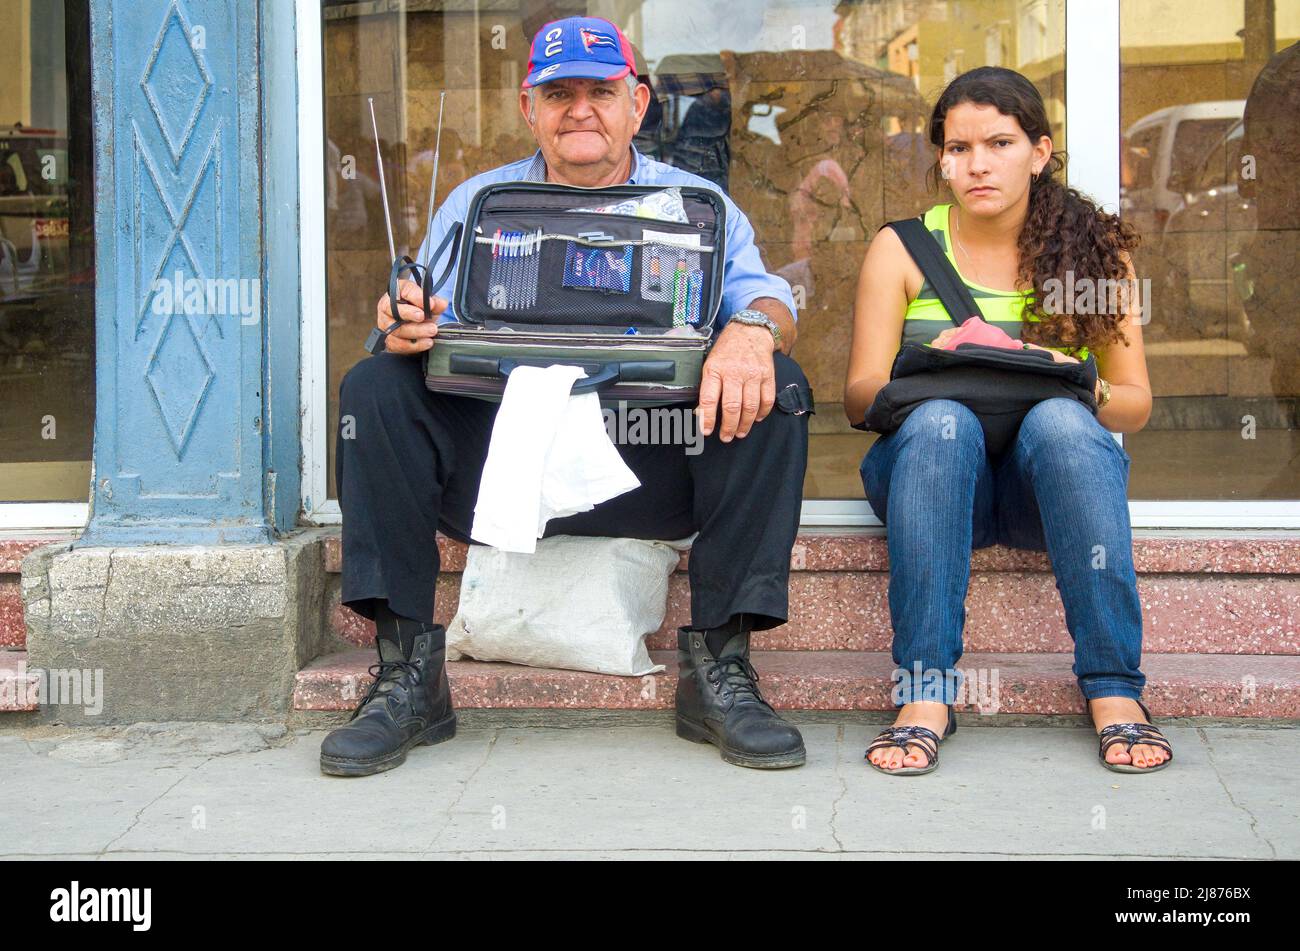 Un homme âgé vend de petits articles assis dans le bureau de poste du centre-ville. Il porte une casquette de baseball avec des symboles cubains. Une jeune femme est assise à ses côtés. Banque D'Images